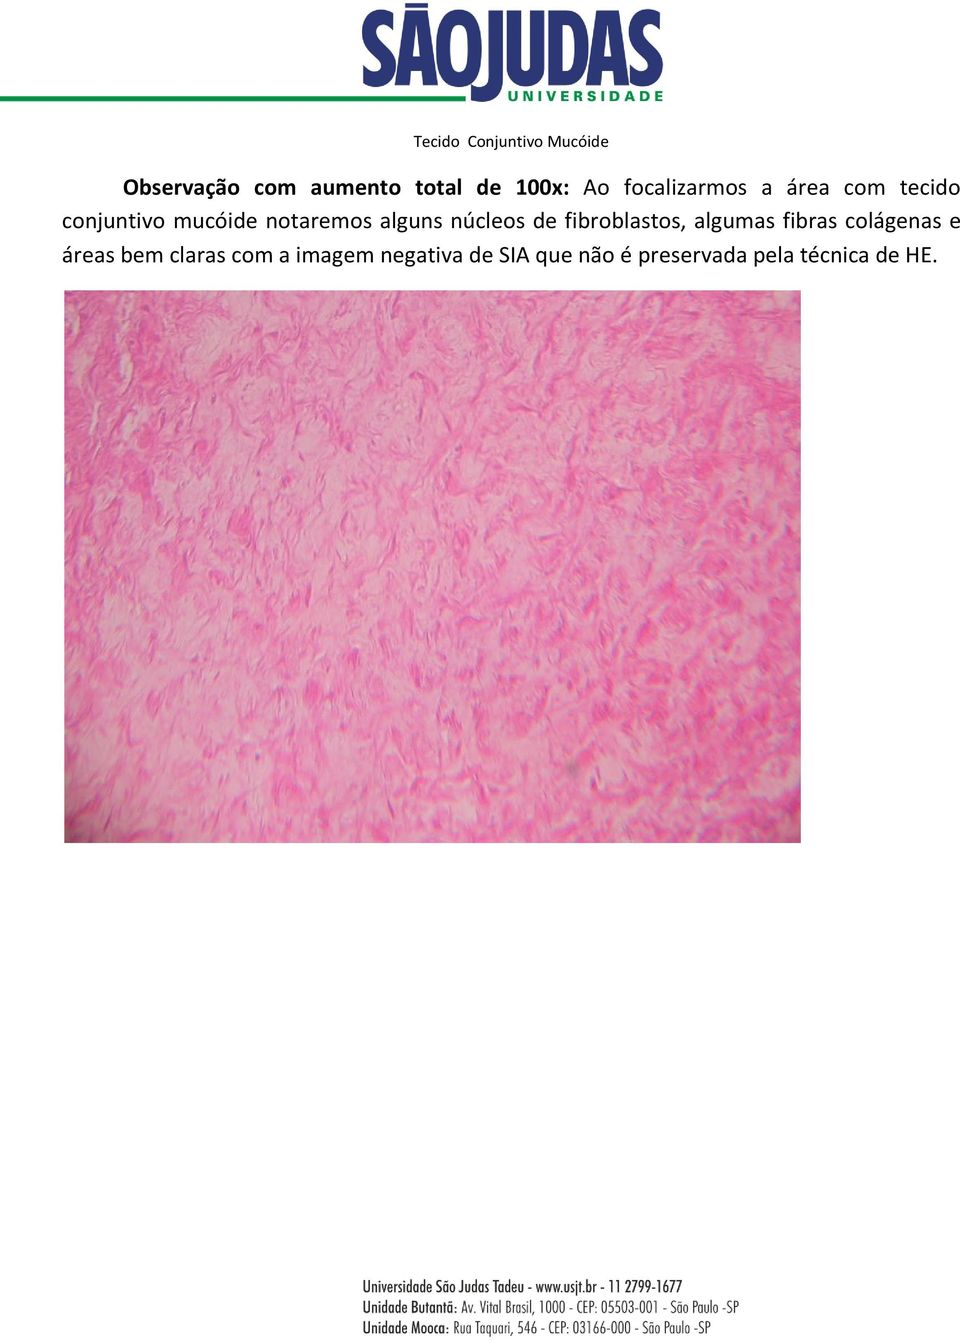 núcleos de fibroblastos, algumas fibras colágenas e áreas bem